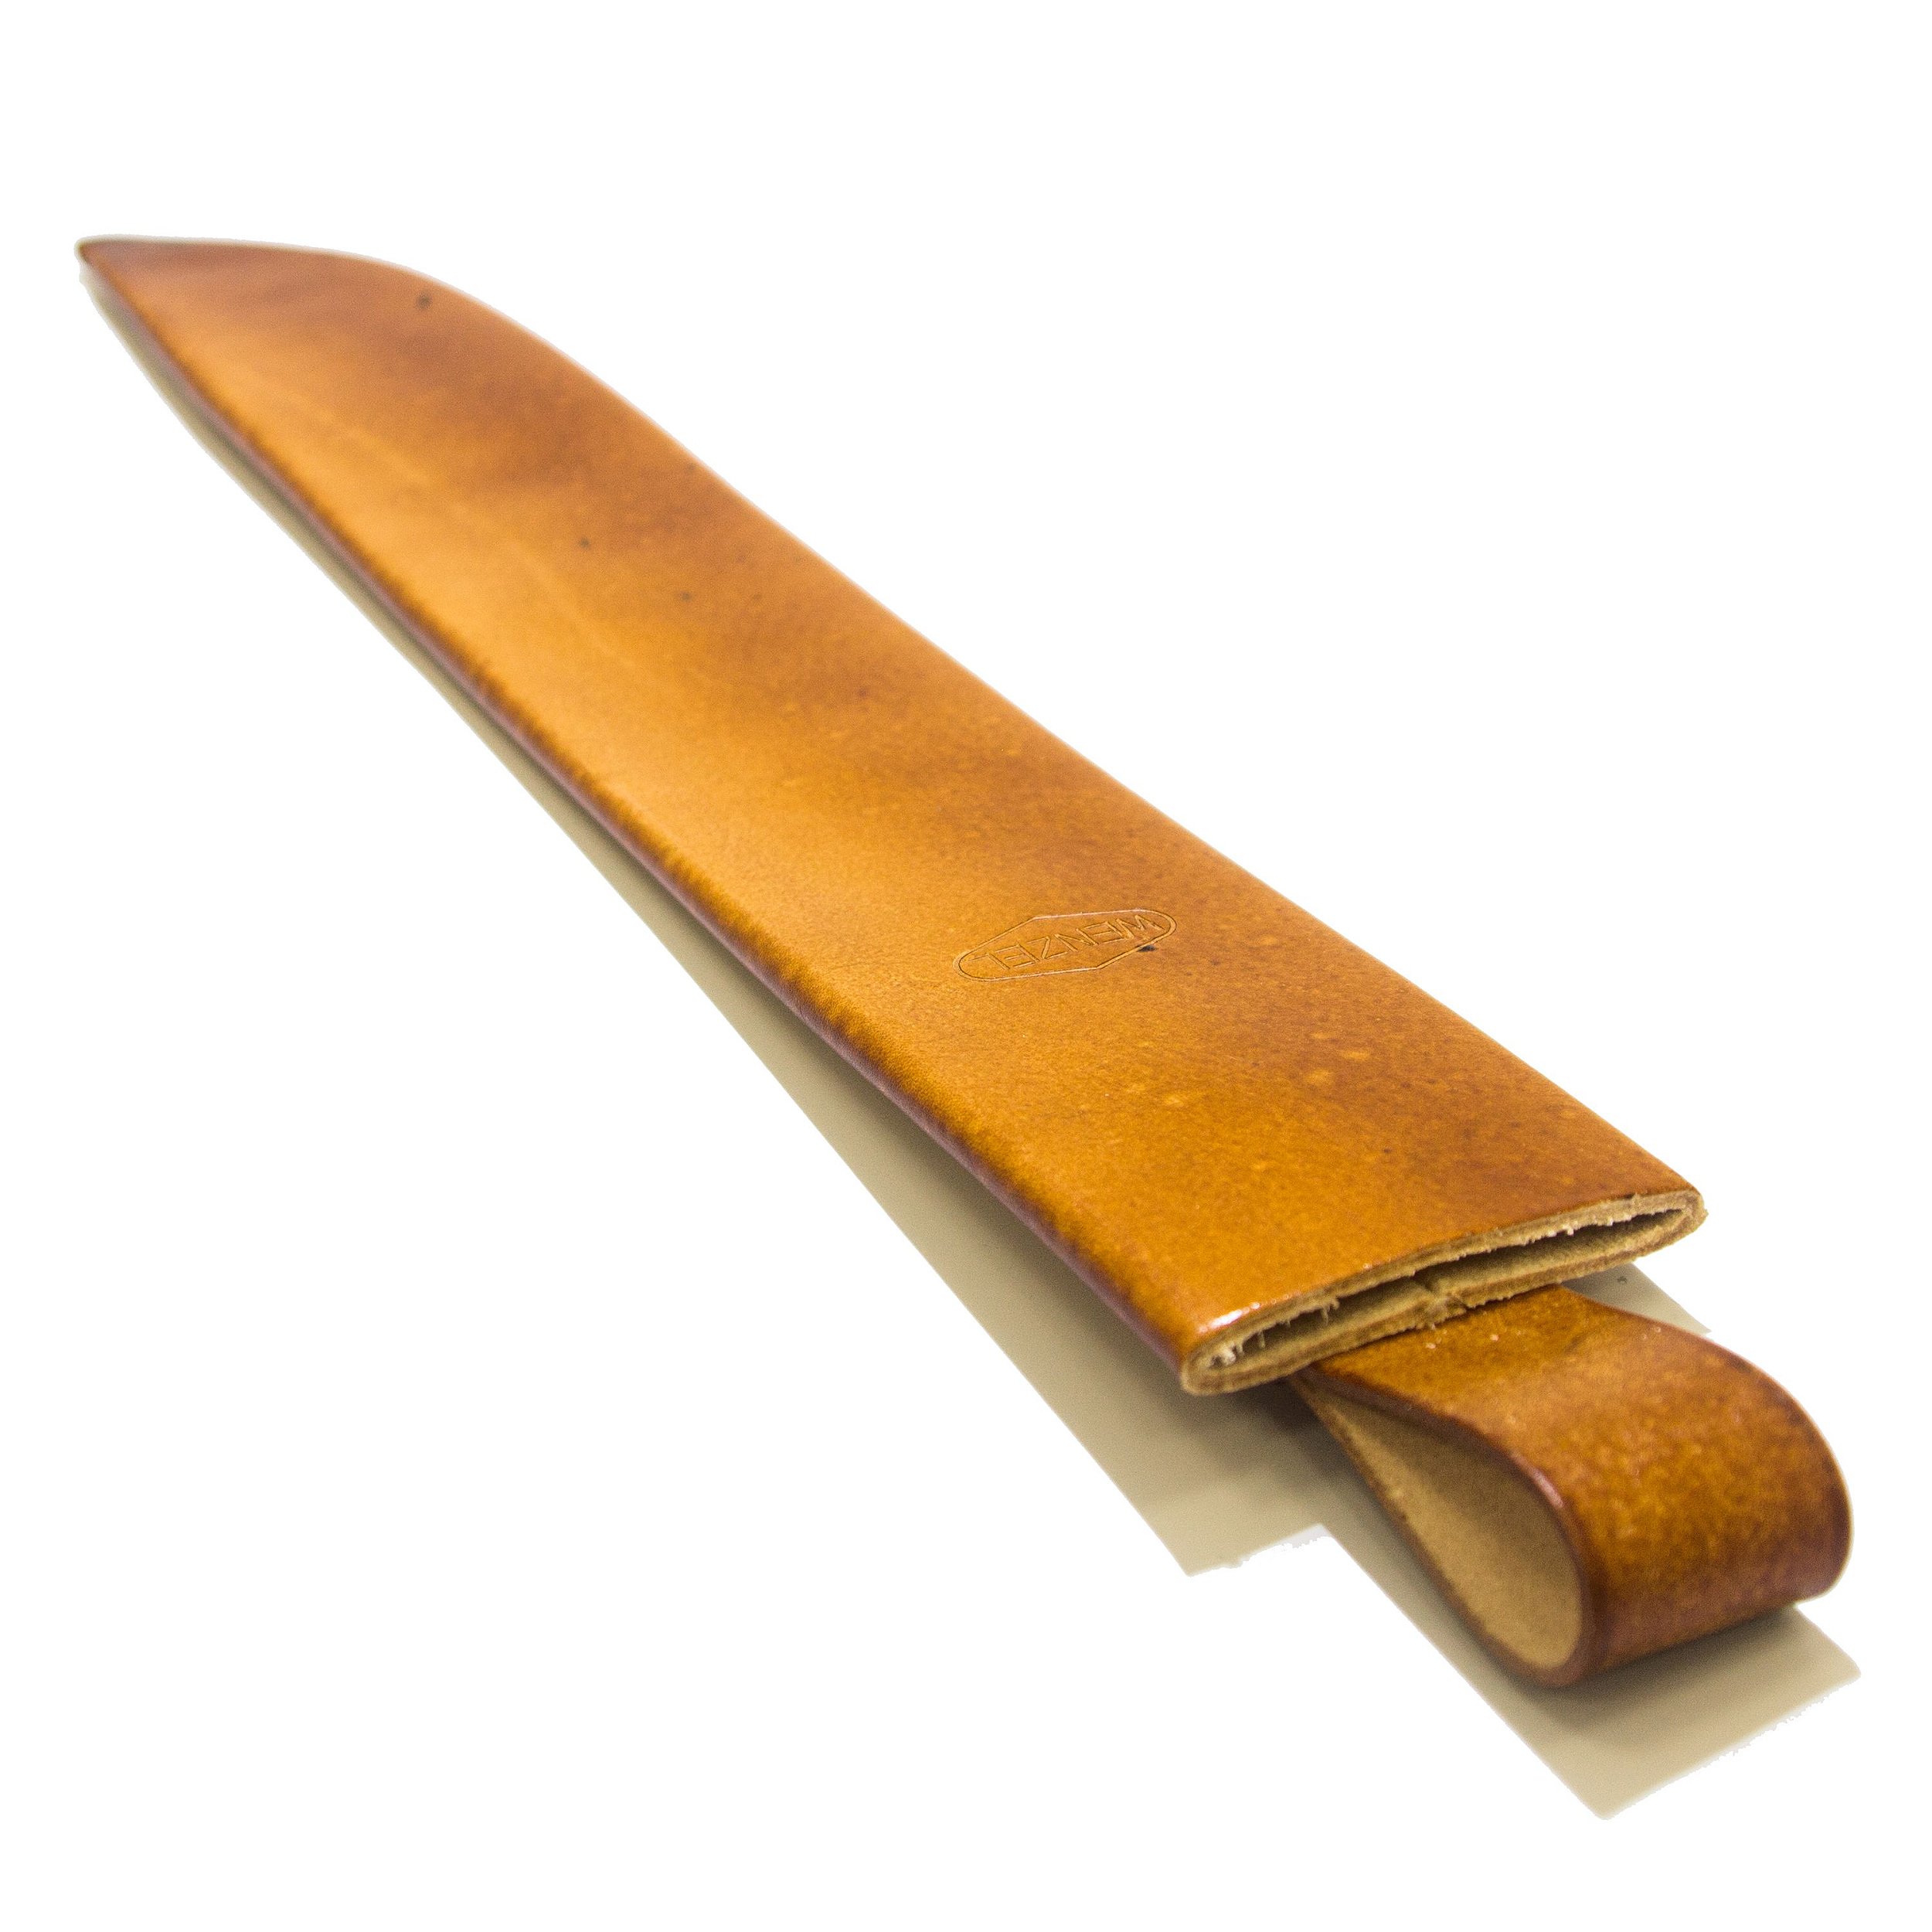 Bainha de couro simples com passa cinto para facão de 12" - Wenzel  Ferramentas - Compre Machados, Facões, Enxadas, Canivetes